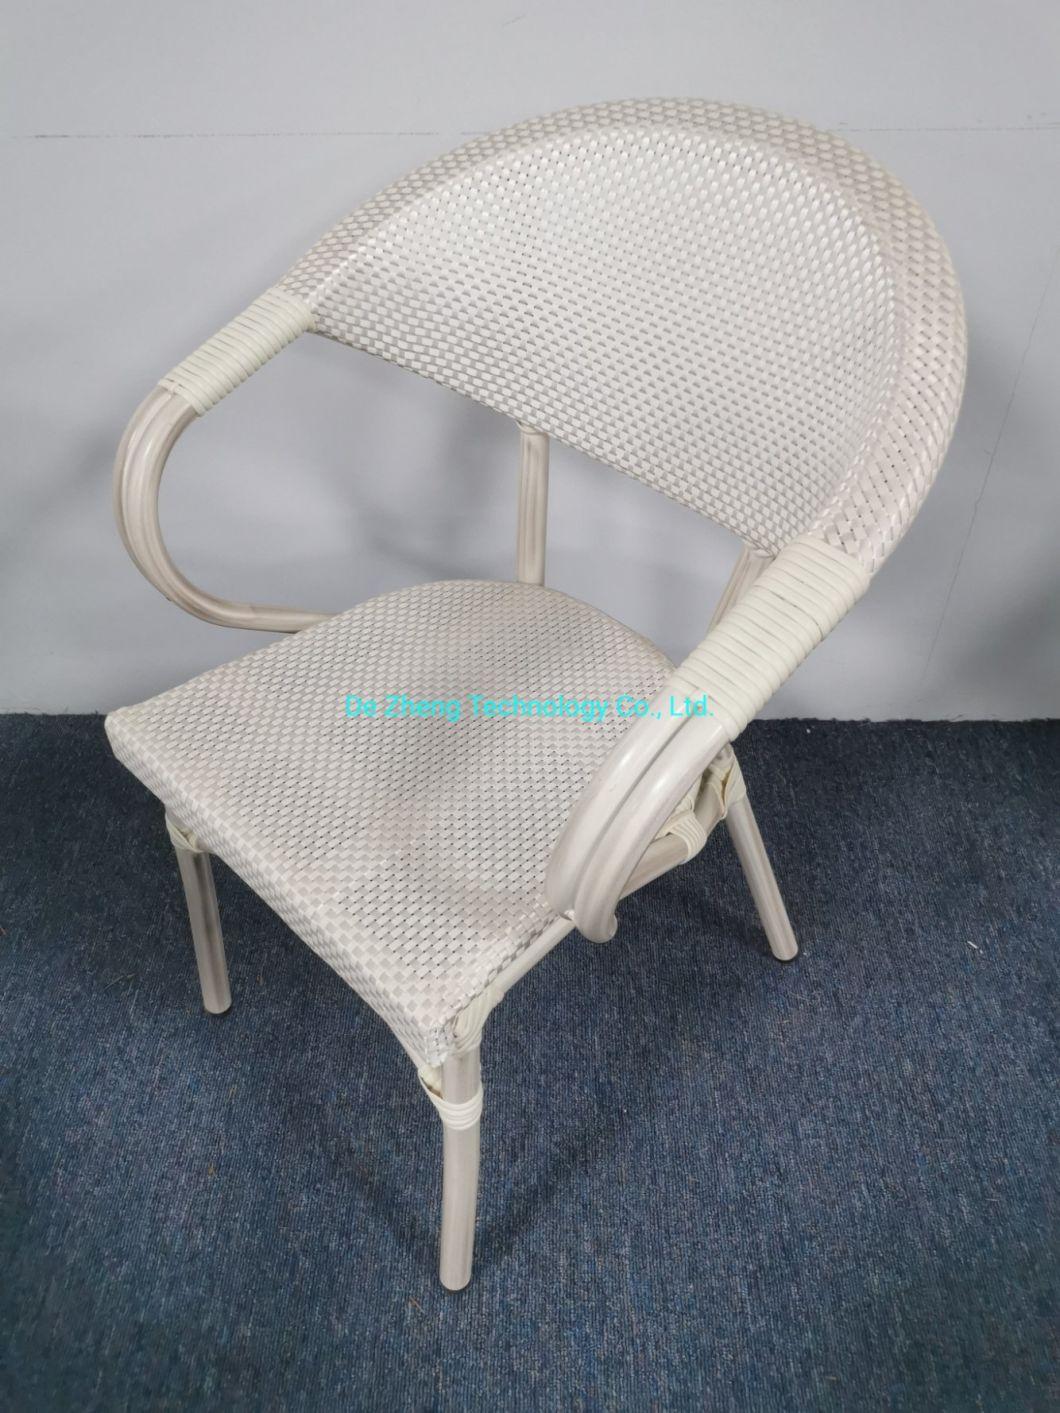 Modern Outdoor Handmade Furniture High Quality Stackable Rattan Textylene Mesh Chair Dining Set Garden Deck Chairs